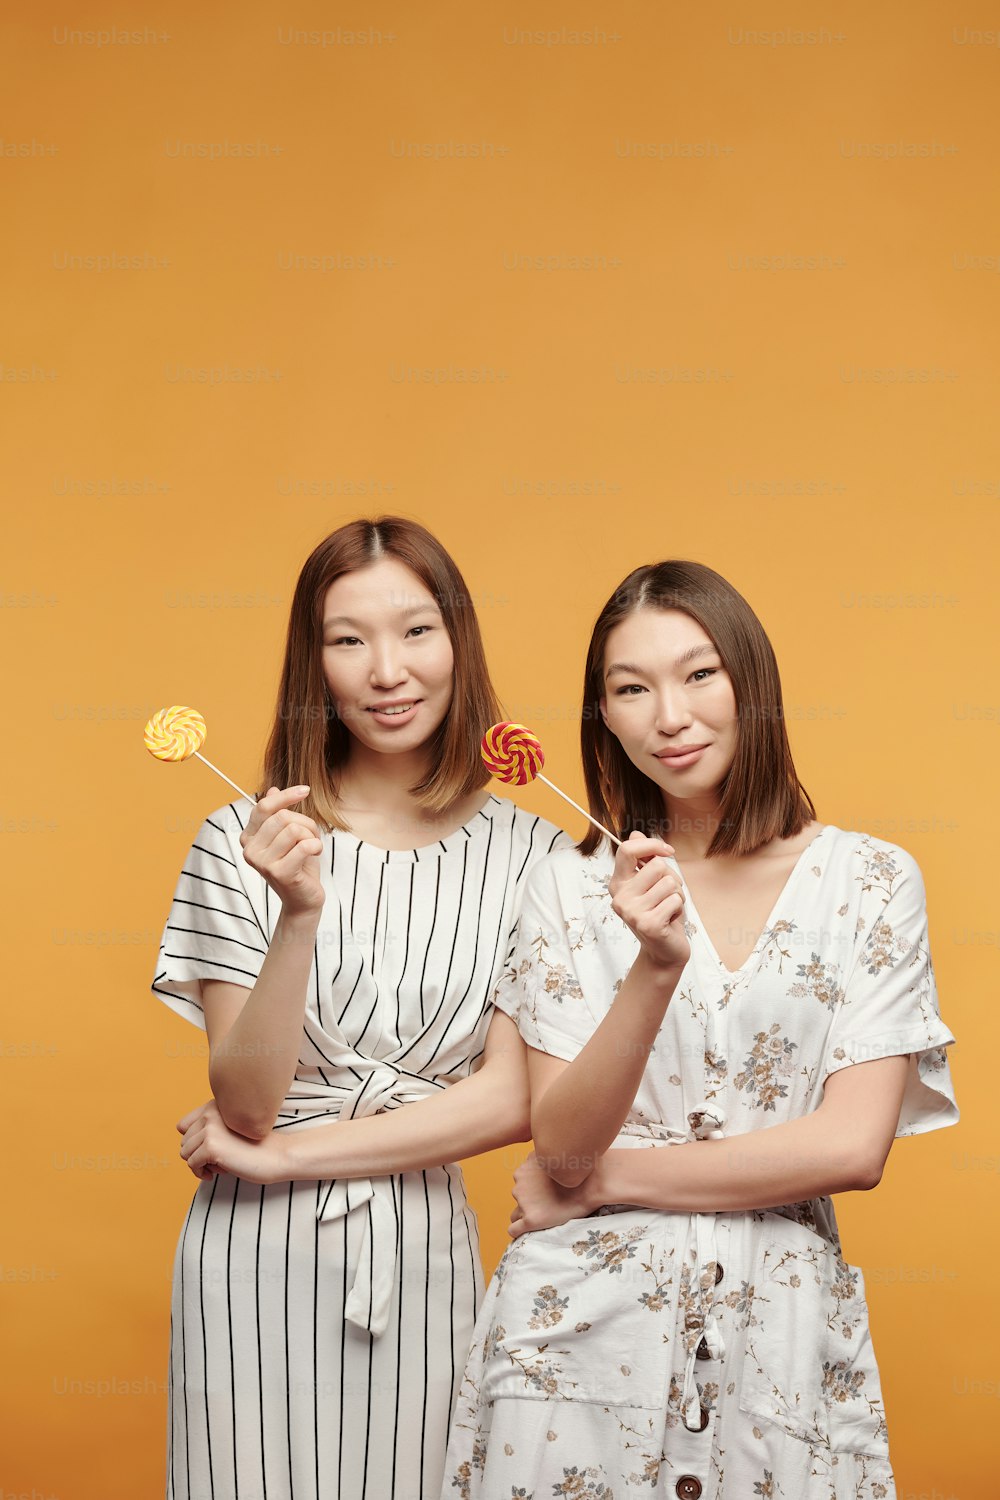 Felices gemelas jóvenes de etnia asiática con piruletas mirándote con sonrisas mientras están de pie frente a la cámara contra fondo amarillo